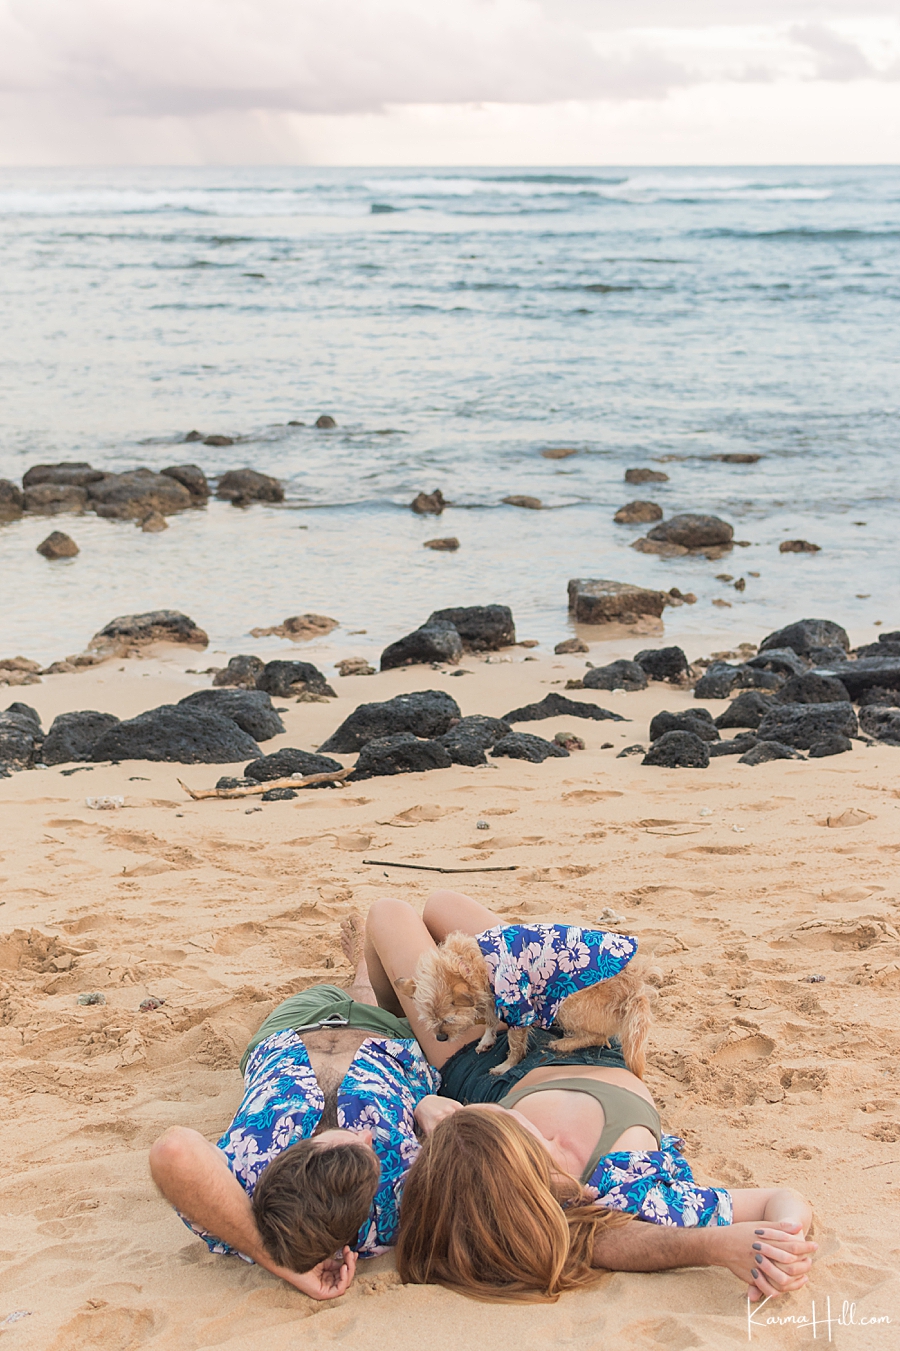  Kauai photography on the beach